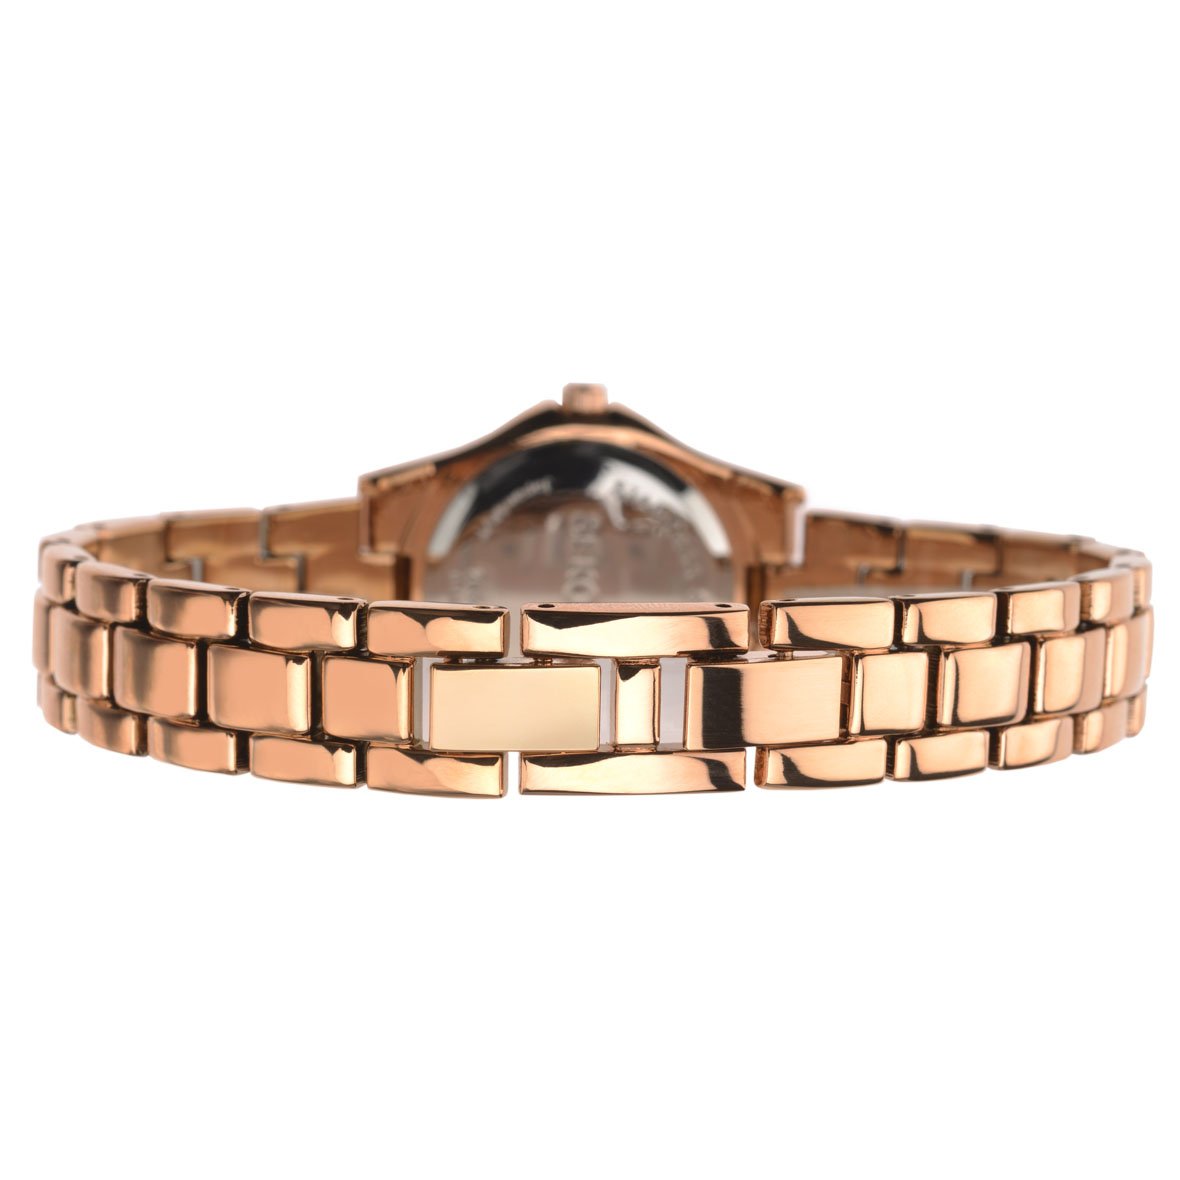 Sekonda Women's Rose Gold Bracelet Watch